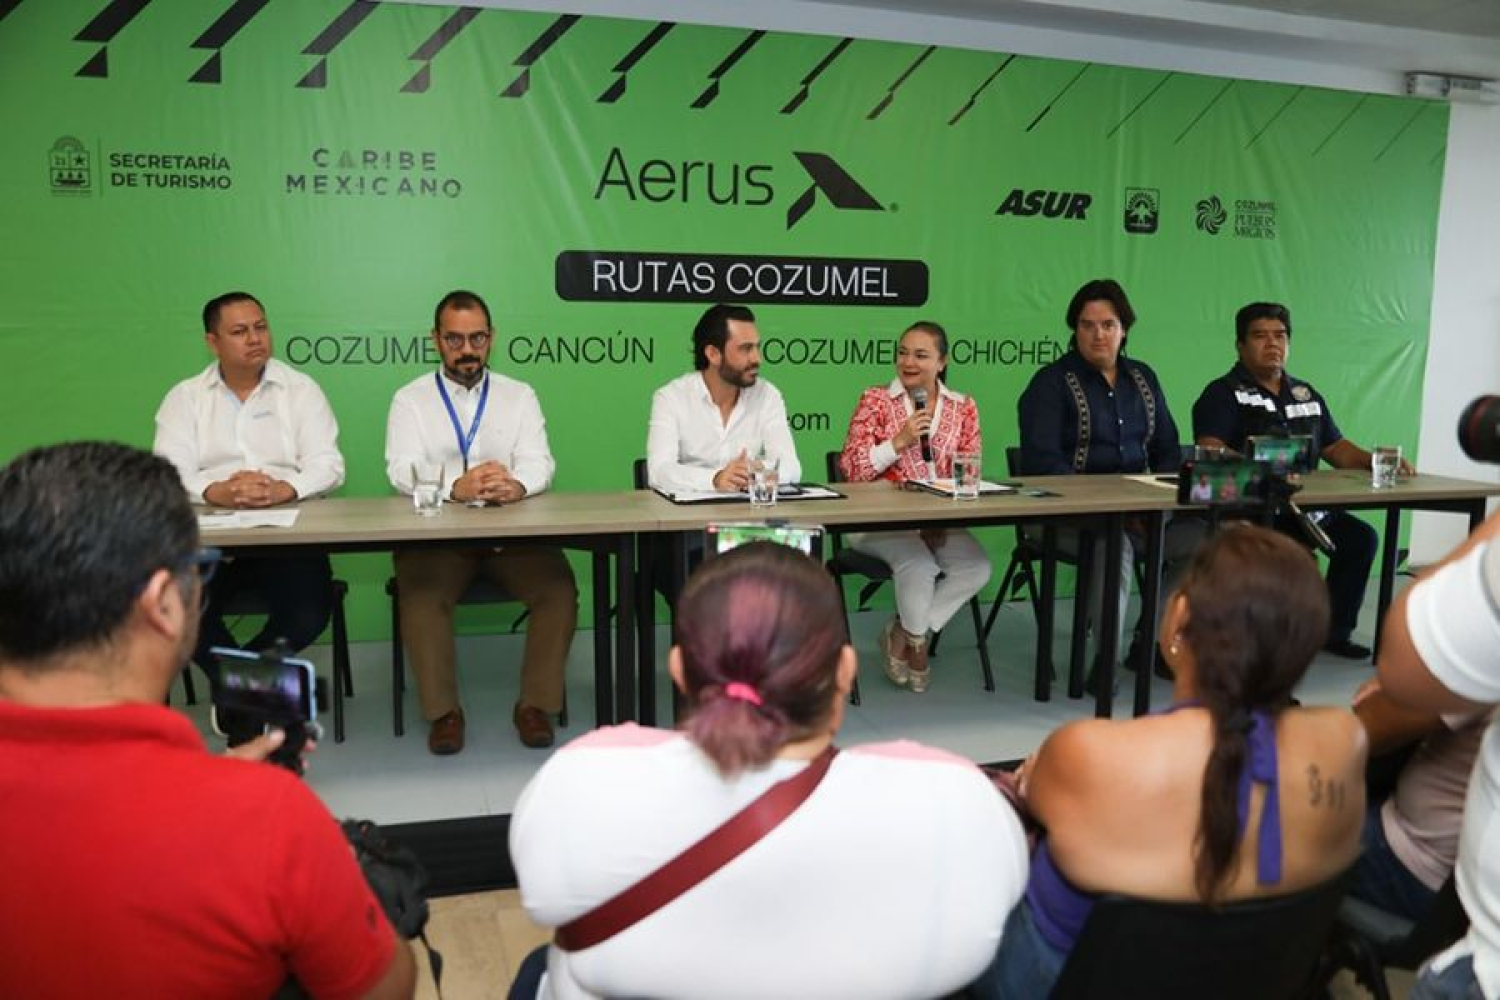 “Aerus” anuncia la apertura de rutas entre Cozumel, Cancún, Chetumal, Chichén Itzá y Mérida